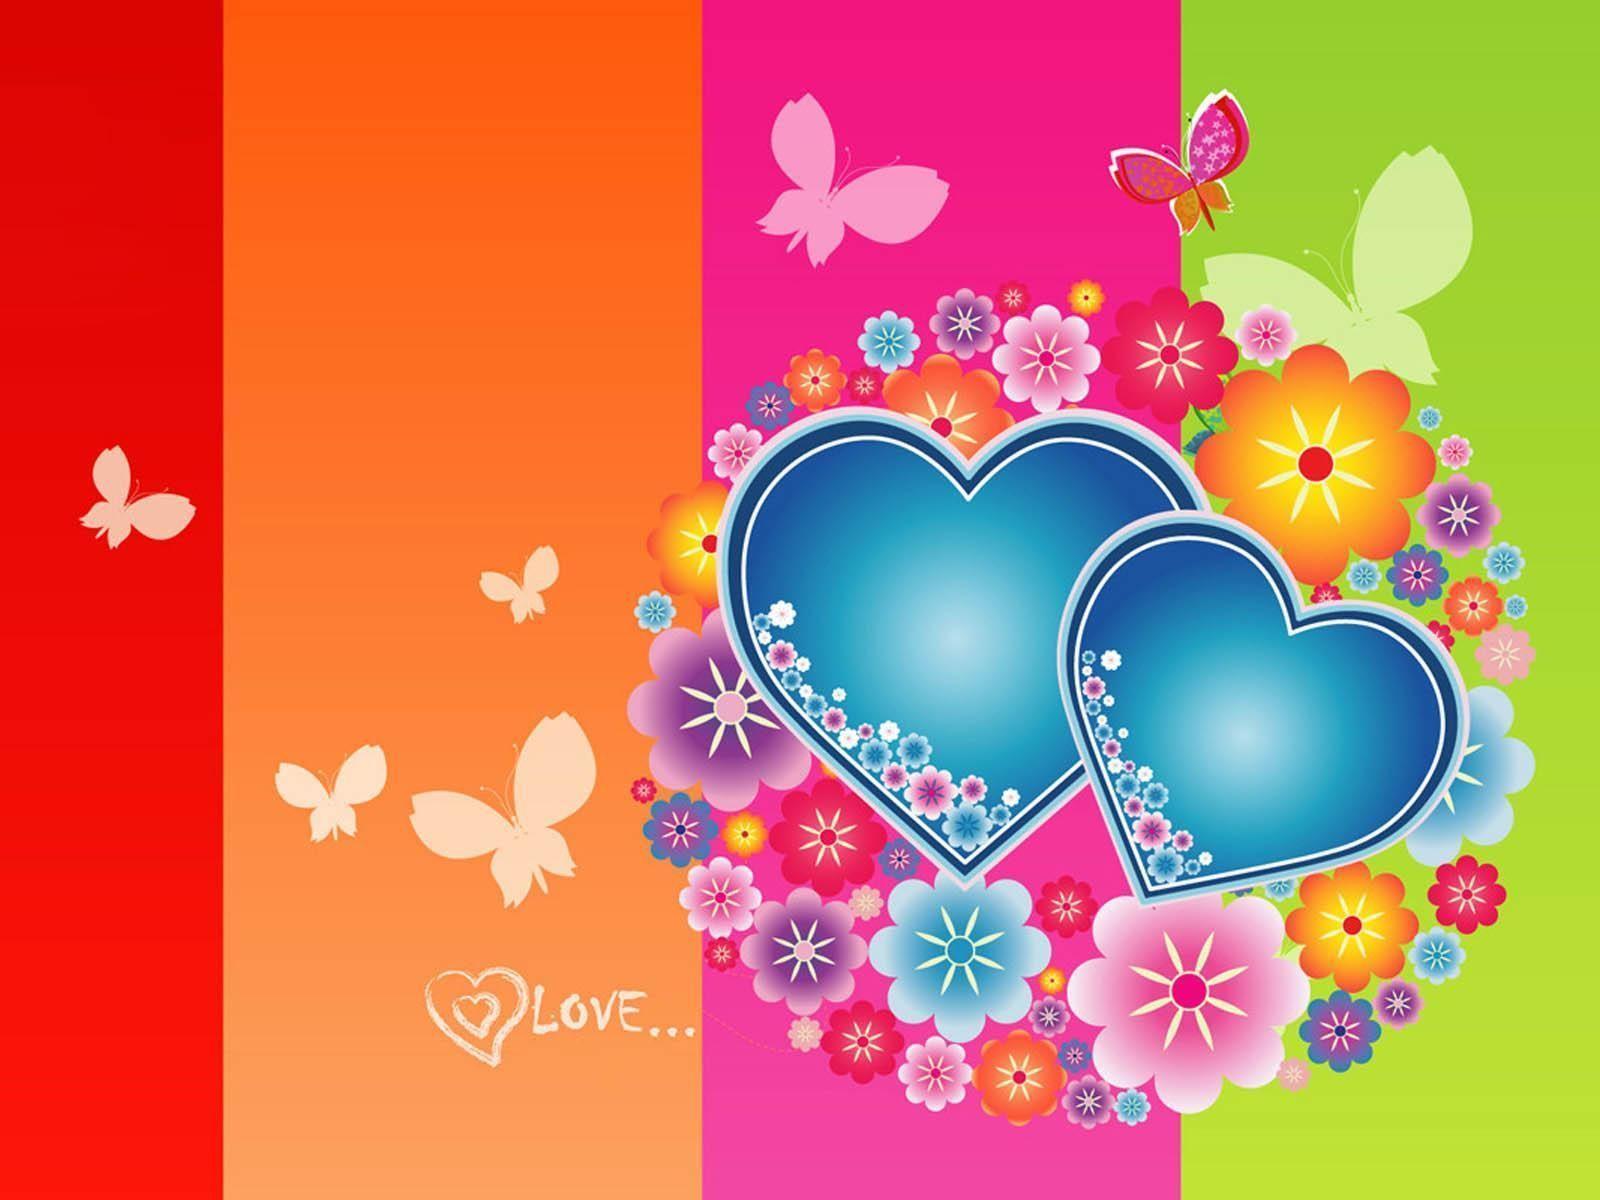 Love Heart Wallpaper. HD Wallpaper Range